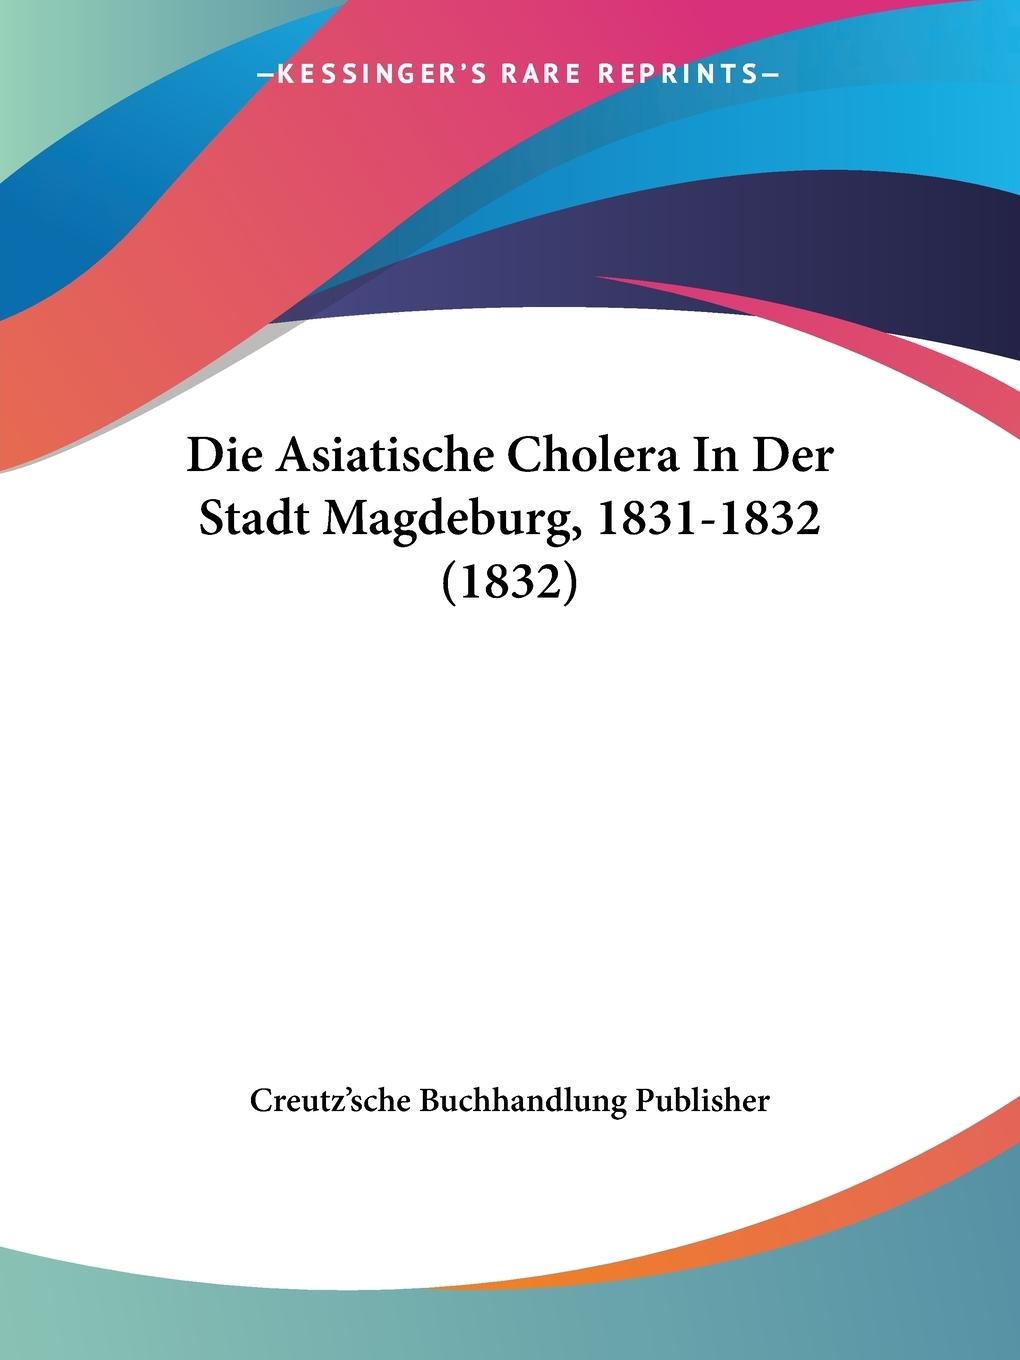 Die Asiatische Cholera In Der Stadt Magdeburg, 1831-1832 (1832) - Creutz sche Buchhandlung Publisher